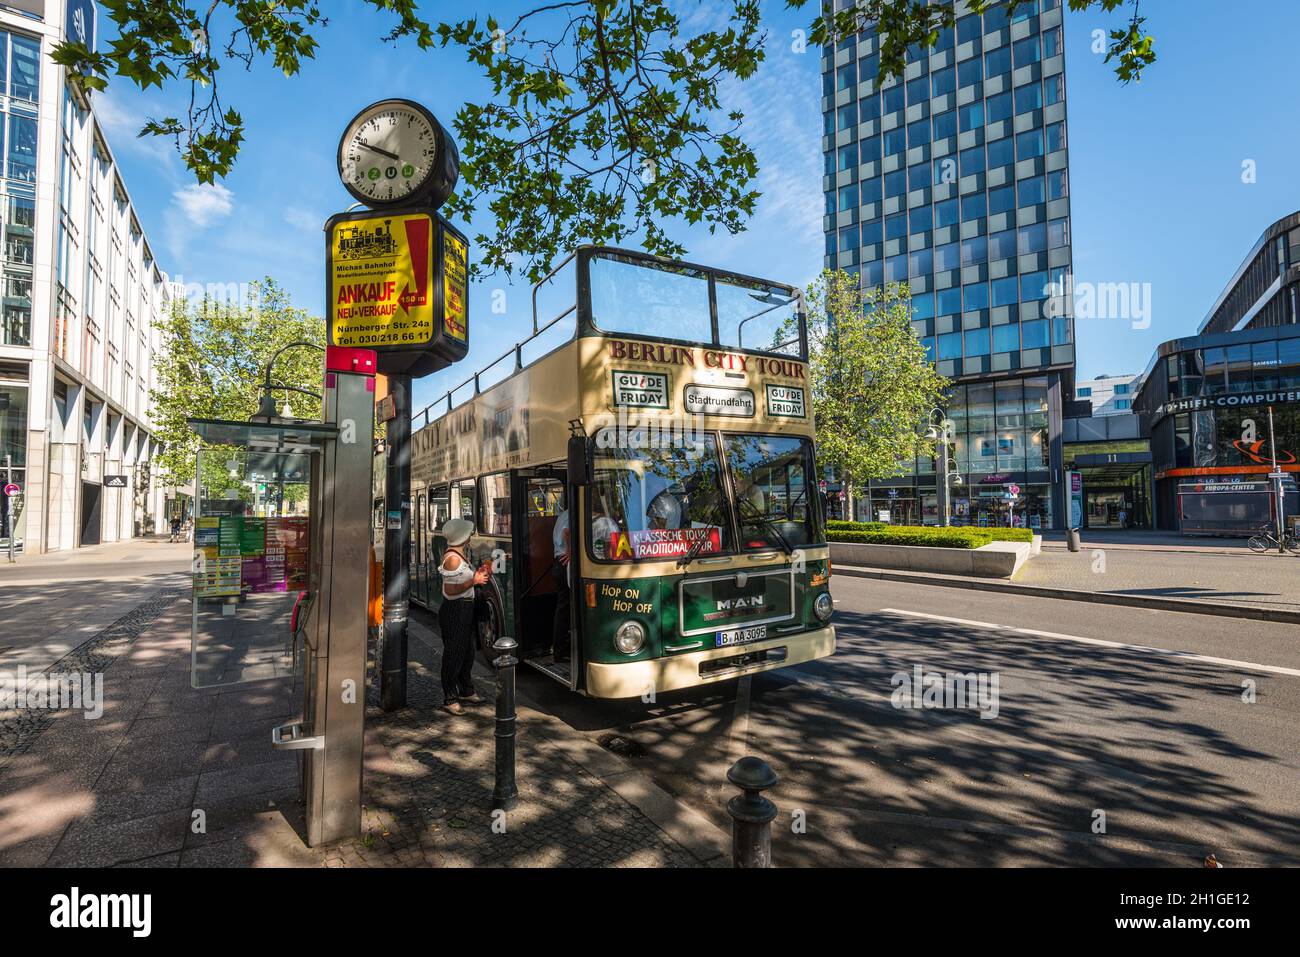 Berlin, Deutschland - 27. Mai 2017: Hop-on Hop-off Sightseeing Bus Berlin City Tour in der Stadt für Touristen an einer Haltestelle in Berlin, Deutschland. Stockfoto